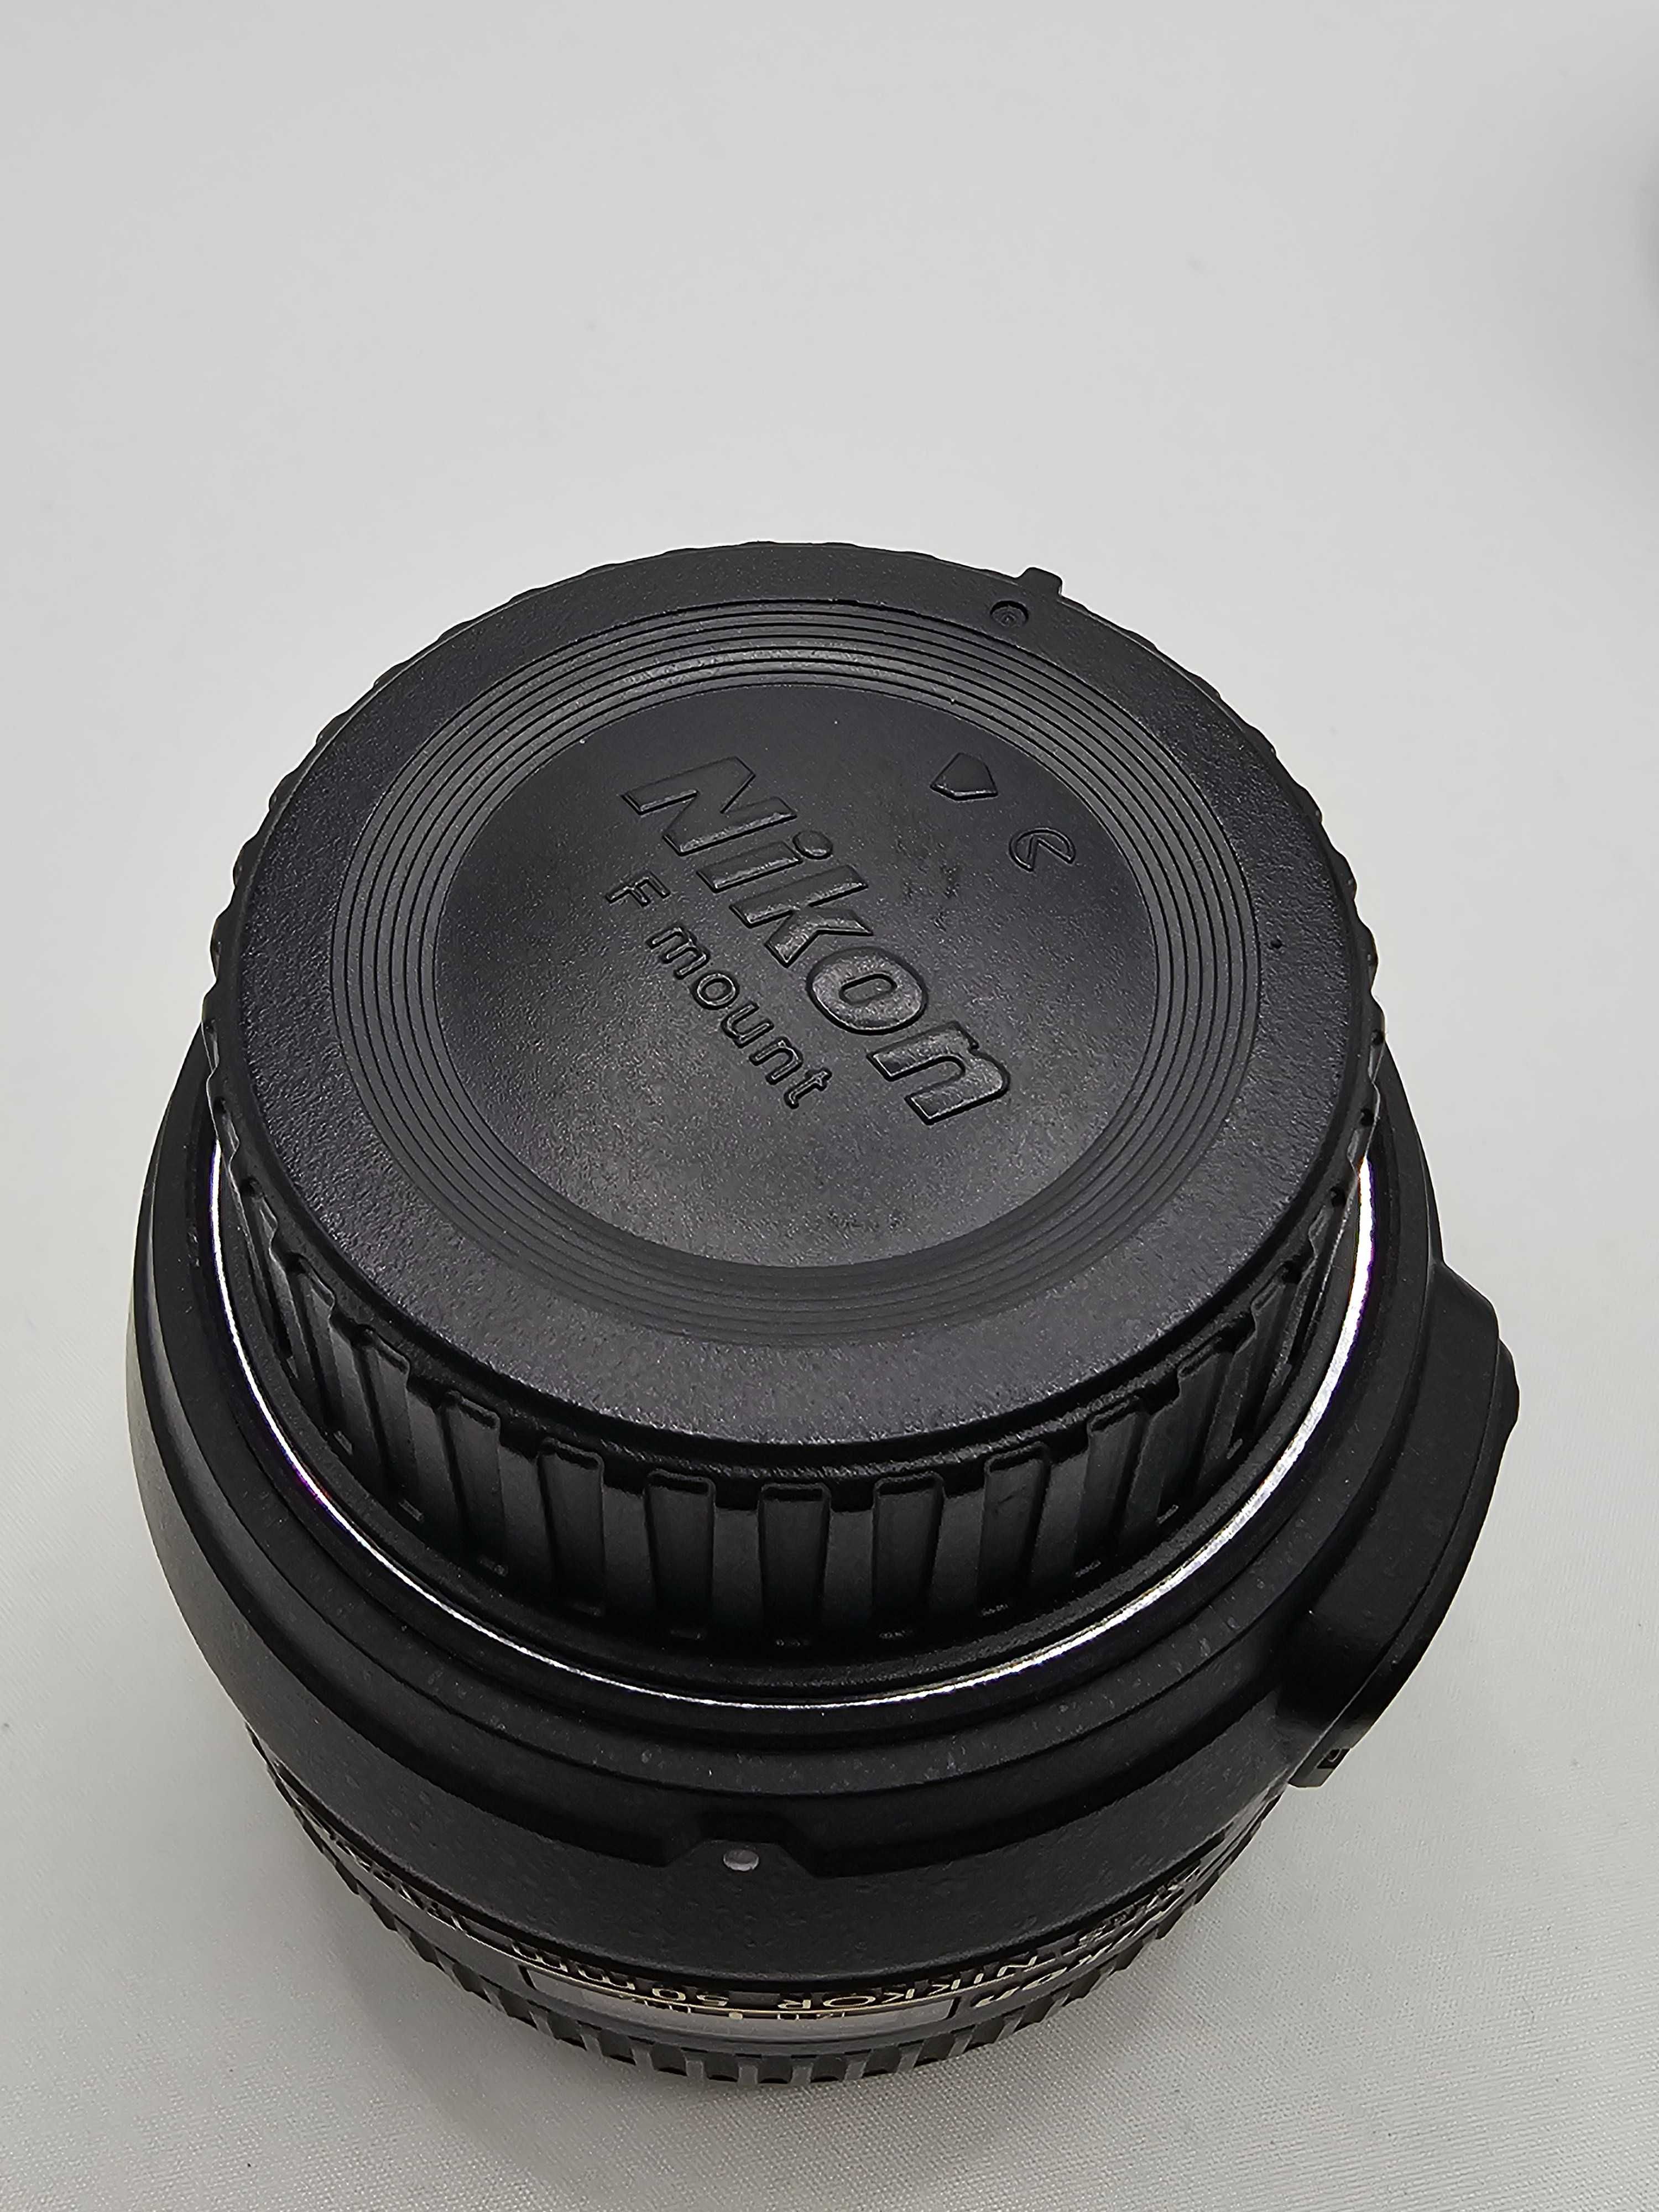 Lente Nikon Af-s Nikkon 50mm 1:1.4G